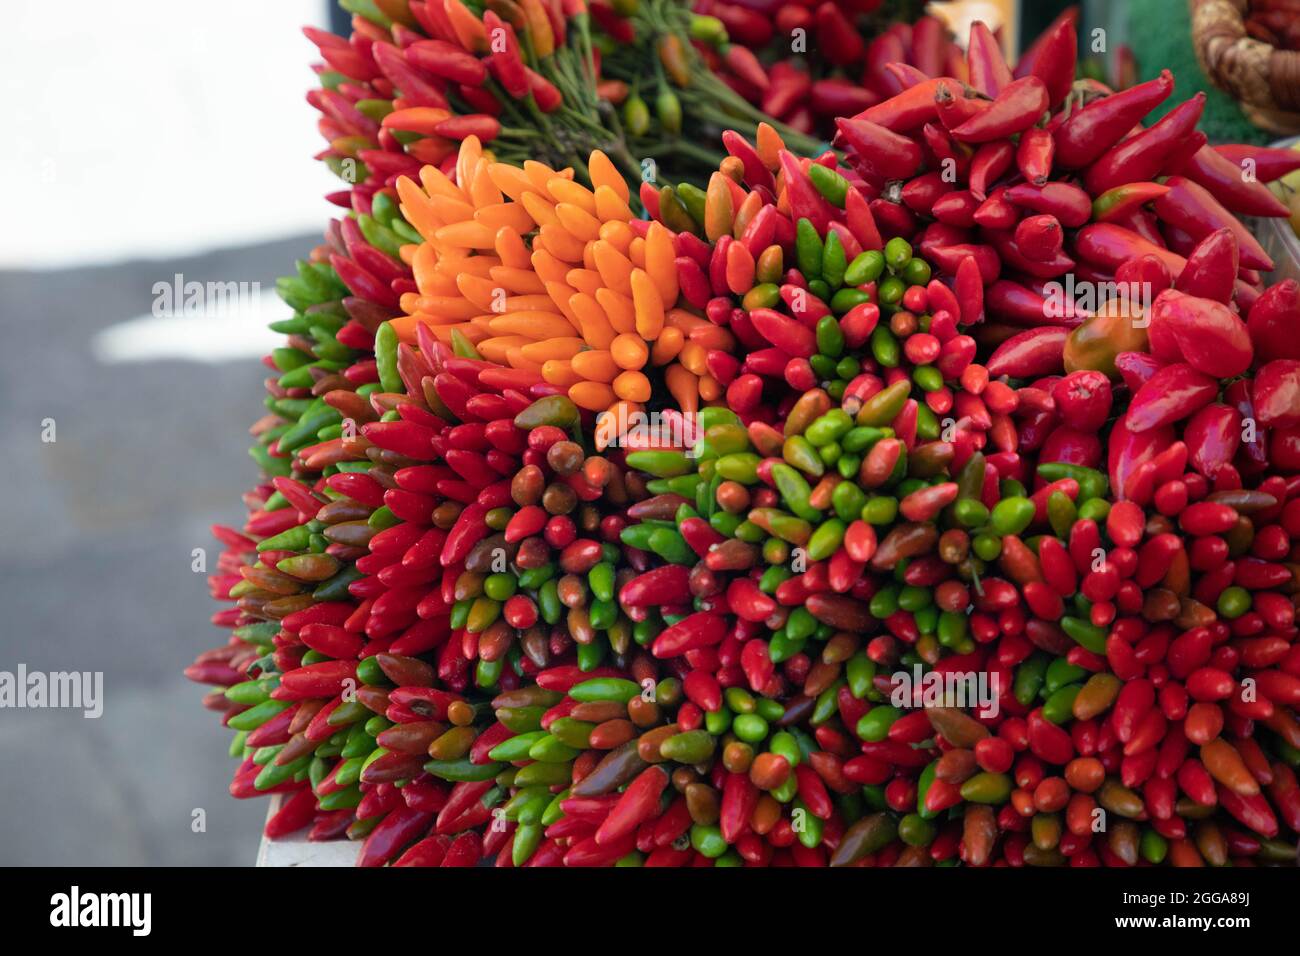 Peperoncino piccante di vari colori- ingredienti e spezie naturali biologiche Stock Photo